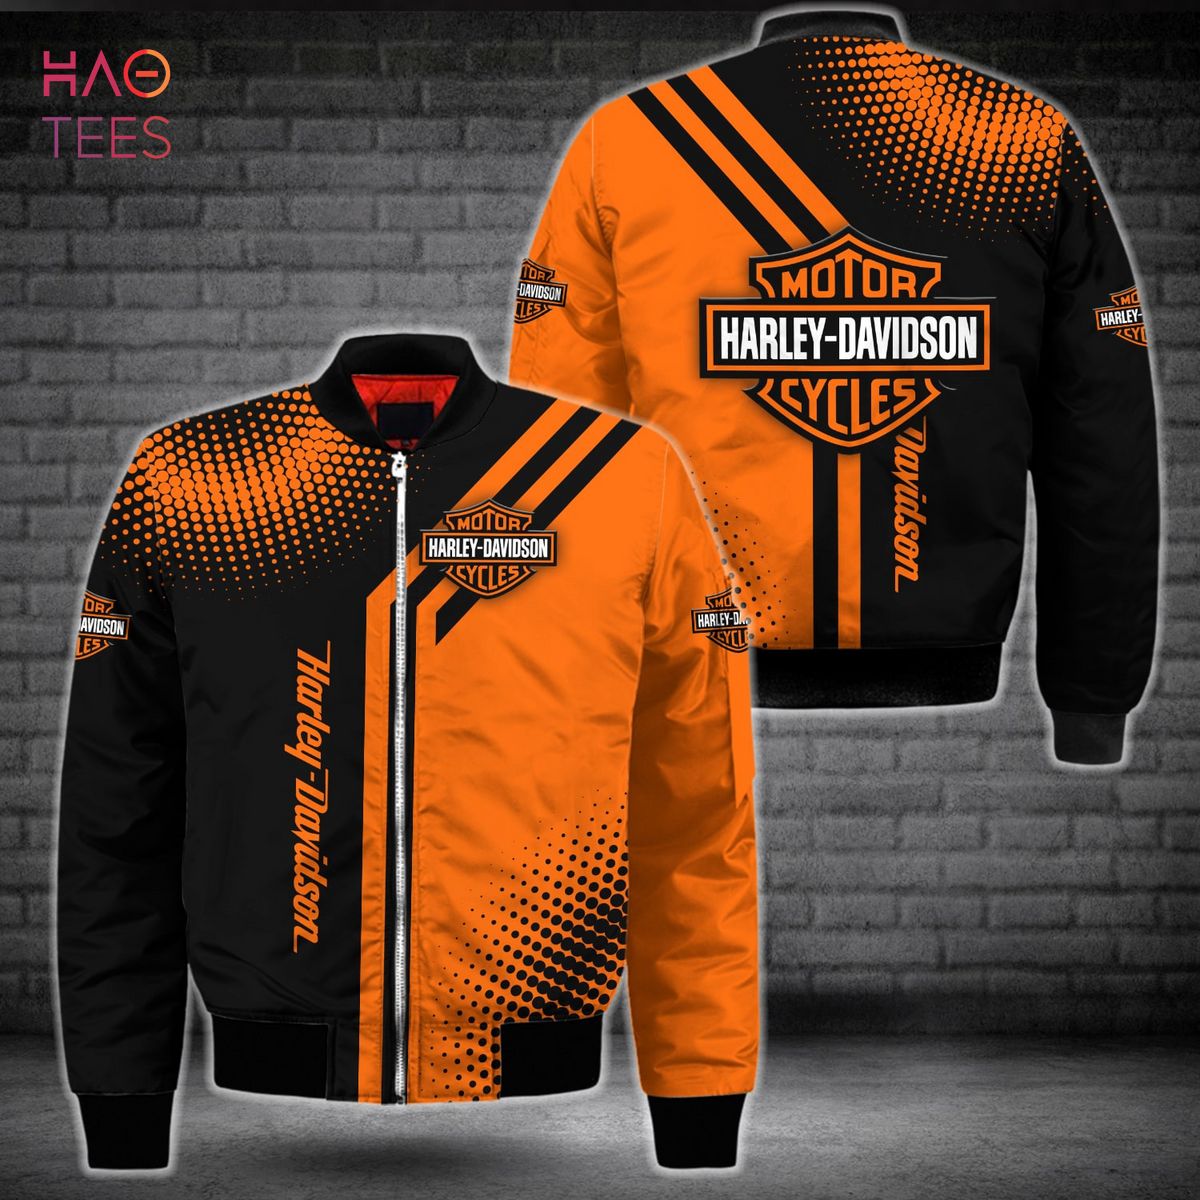 HOT Harley Davidson Luxury Brand Orange Mix Black Bomber Jacket Limited Edition